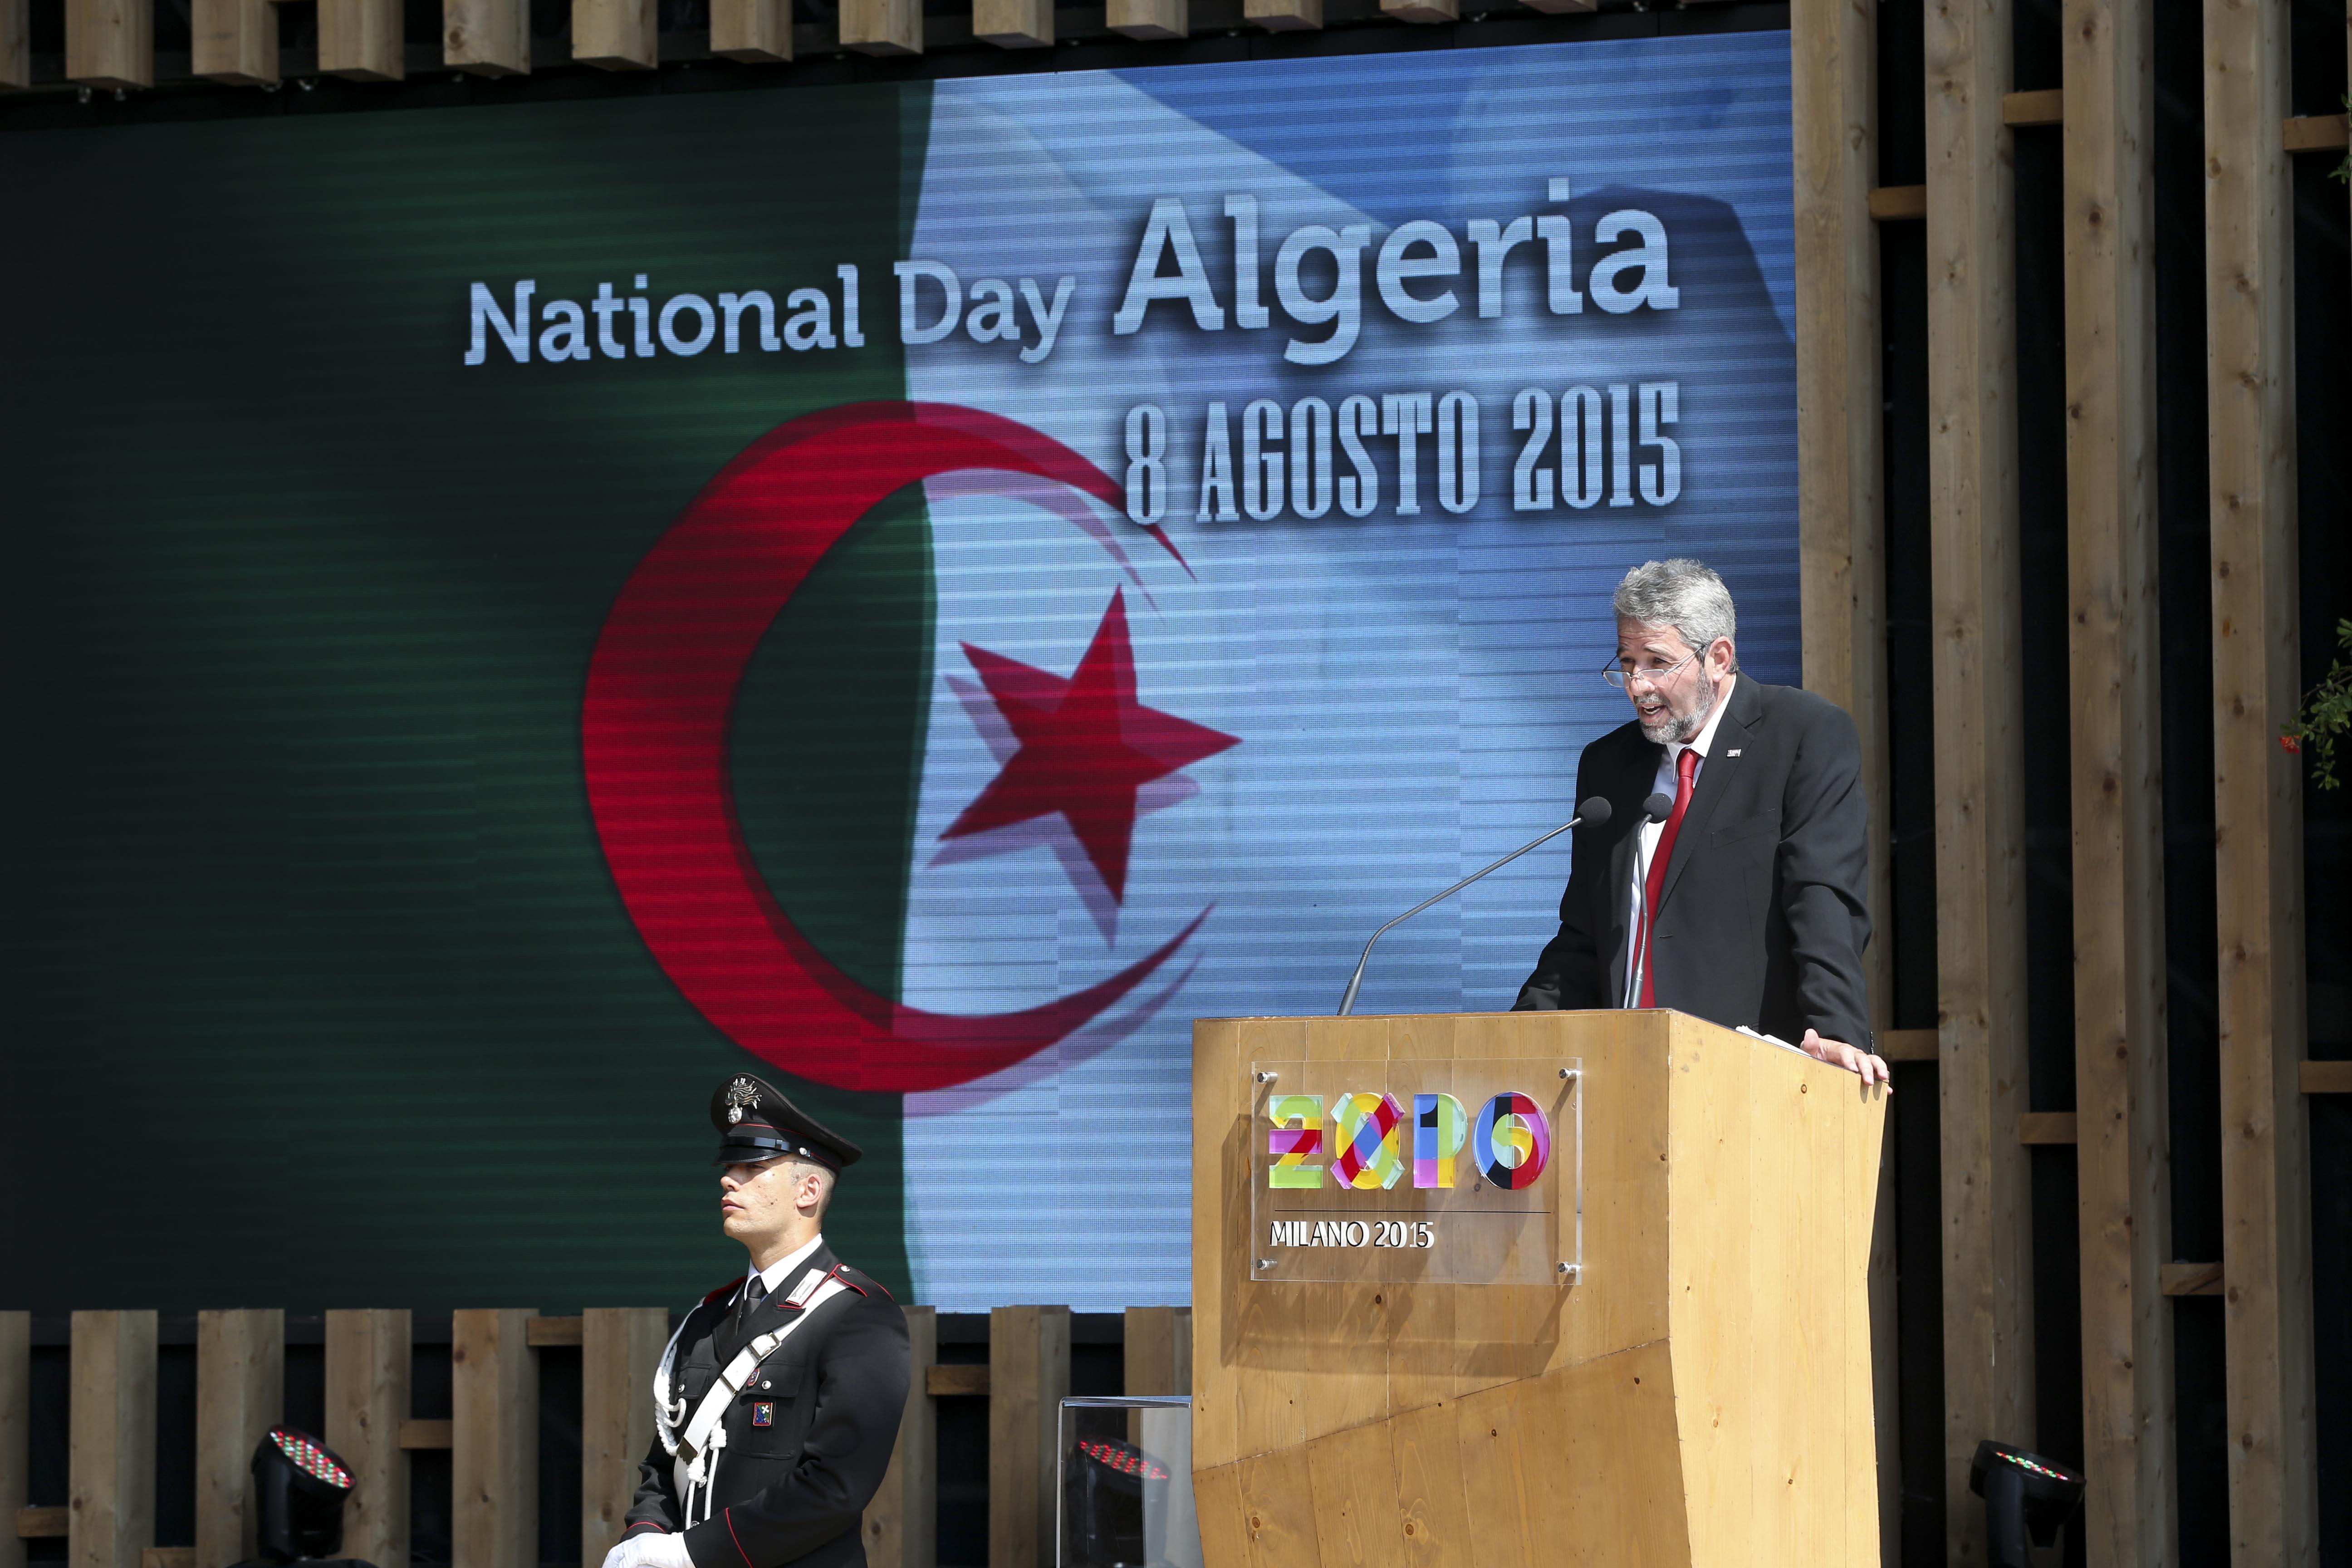 L'Algeria celebra il suo National day a Expo